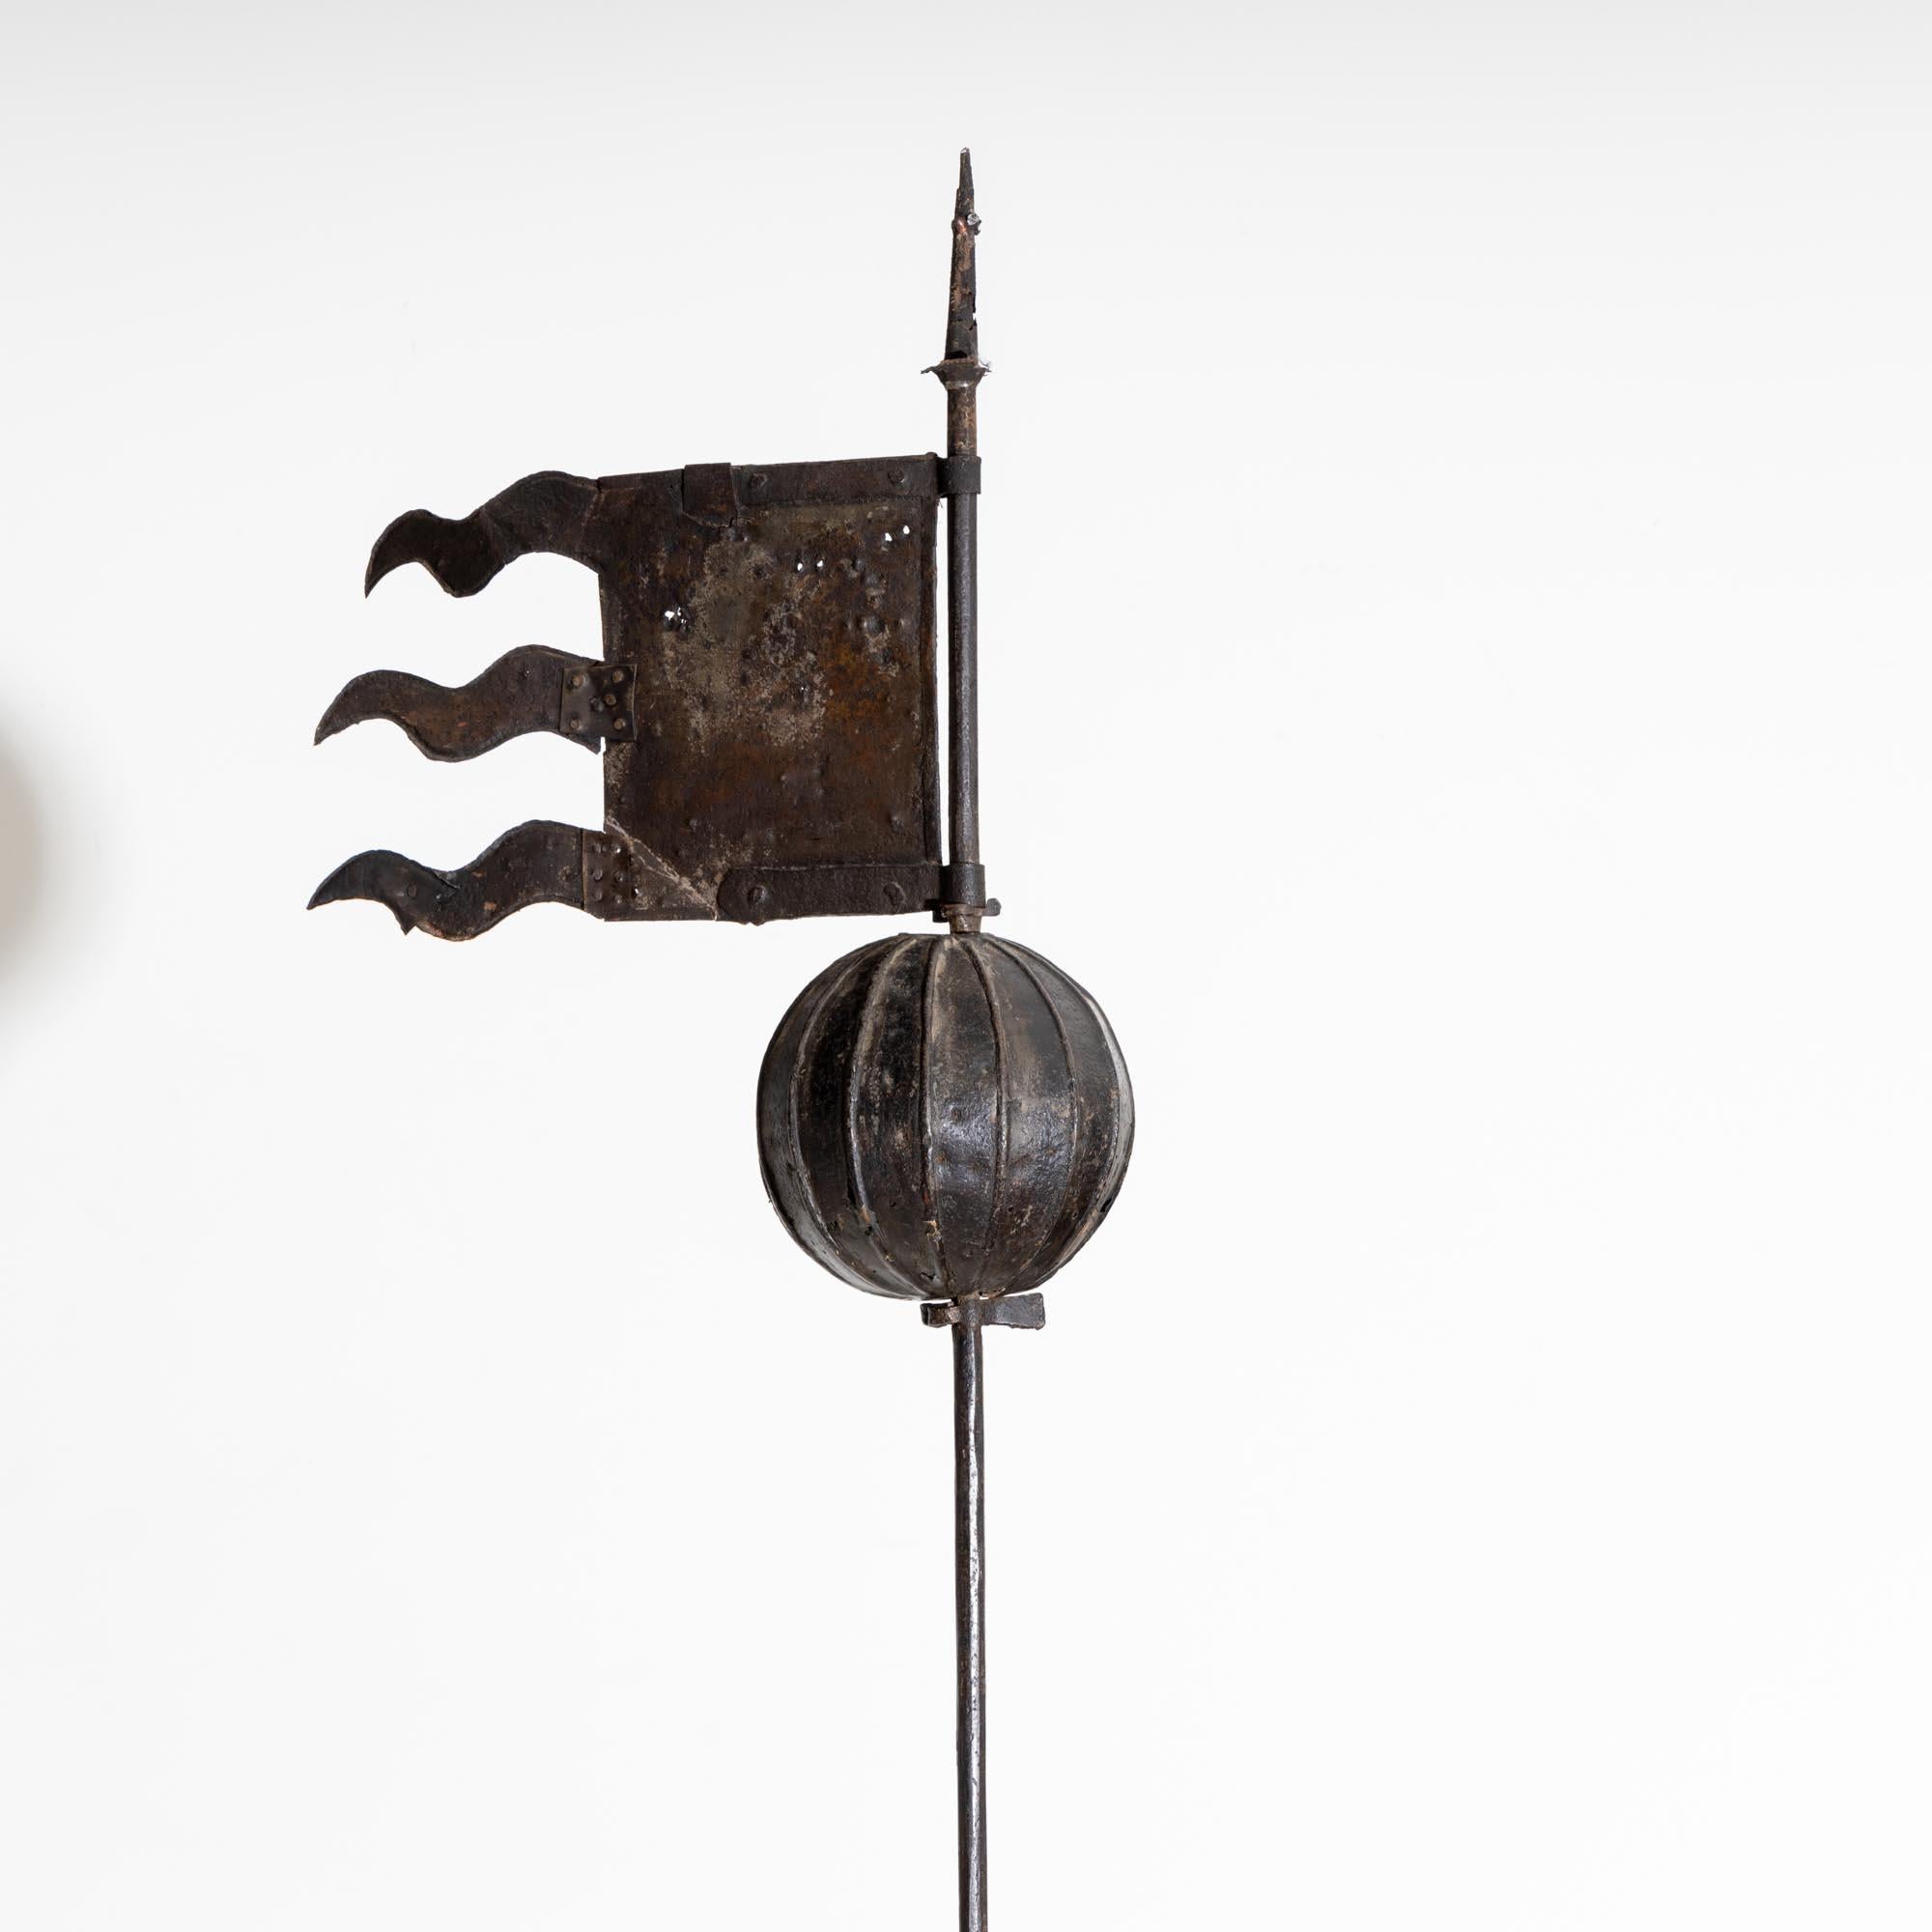 Grande girouette en fer du 17e siècle avec une longue hampe et un bloc de grès taillé à la main en guise de support.